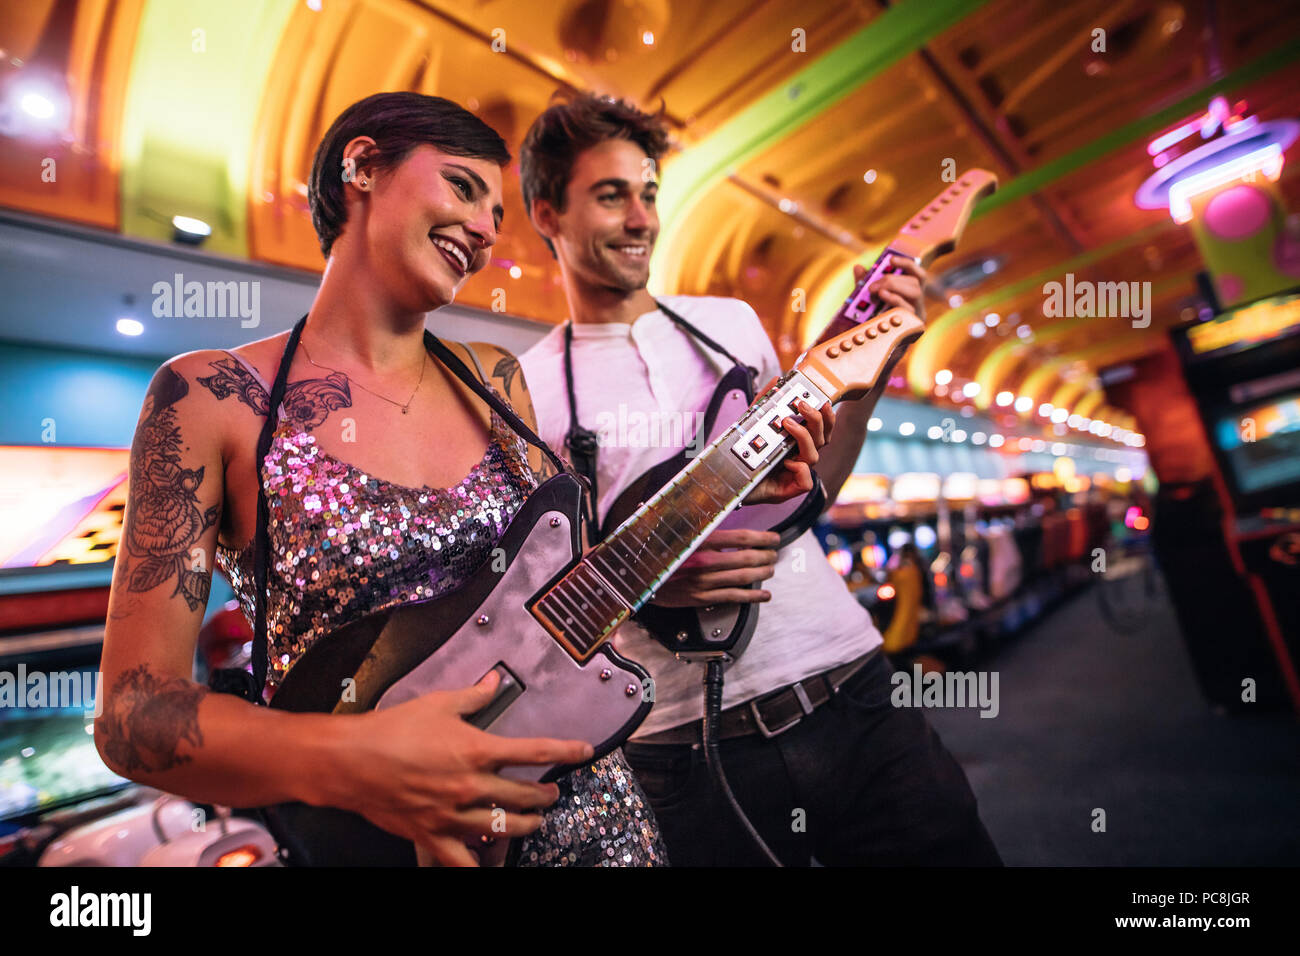 Mann und Frau Holding gaming Gitarren spielen an einem Gaming Salon. Paar lustige Spiele spielen an einem Gaming Arcade. Stockfoto